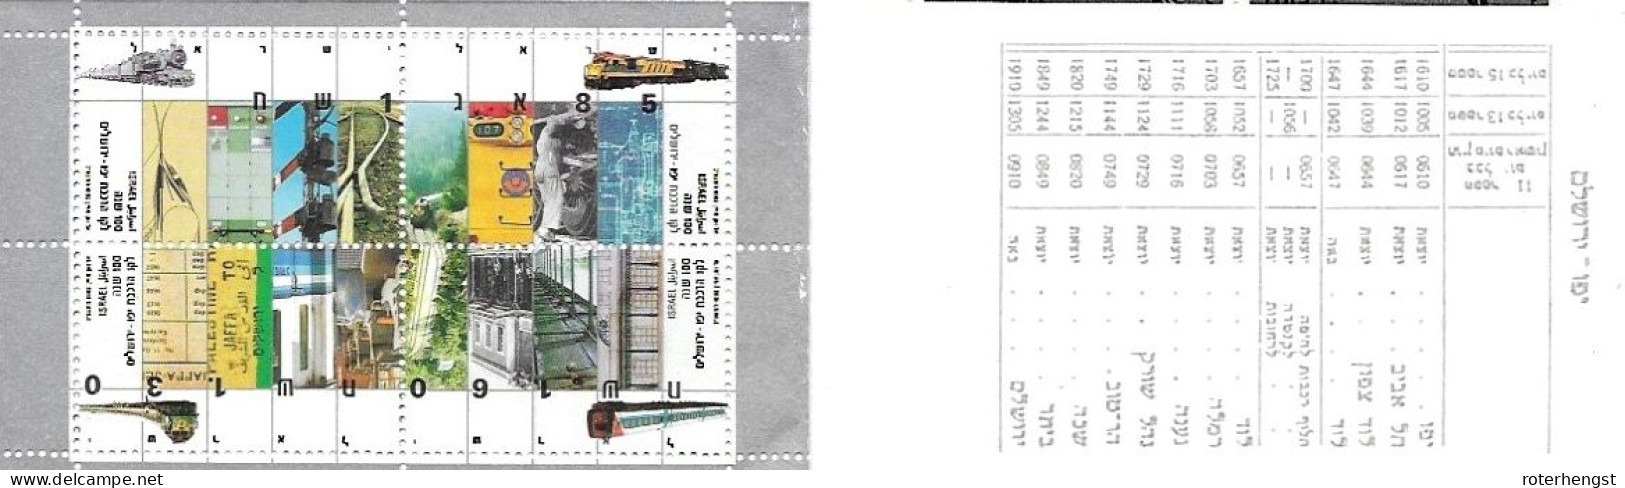 Israel Booklet Mnh ** 1992 15 Euros Train - Cuadernillos